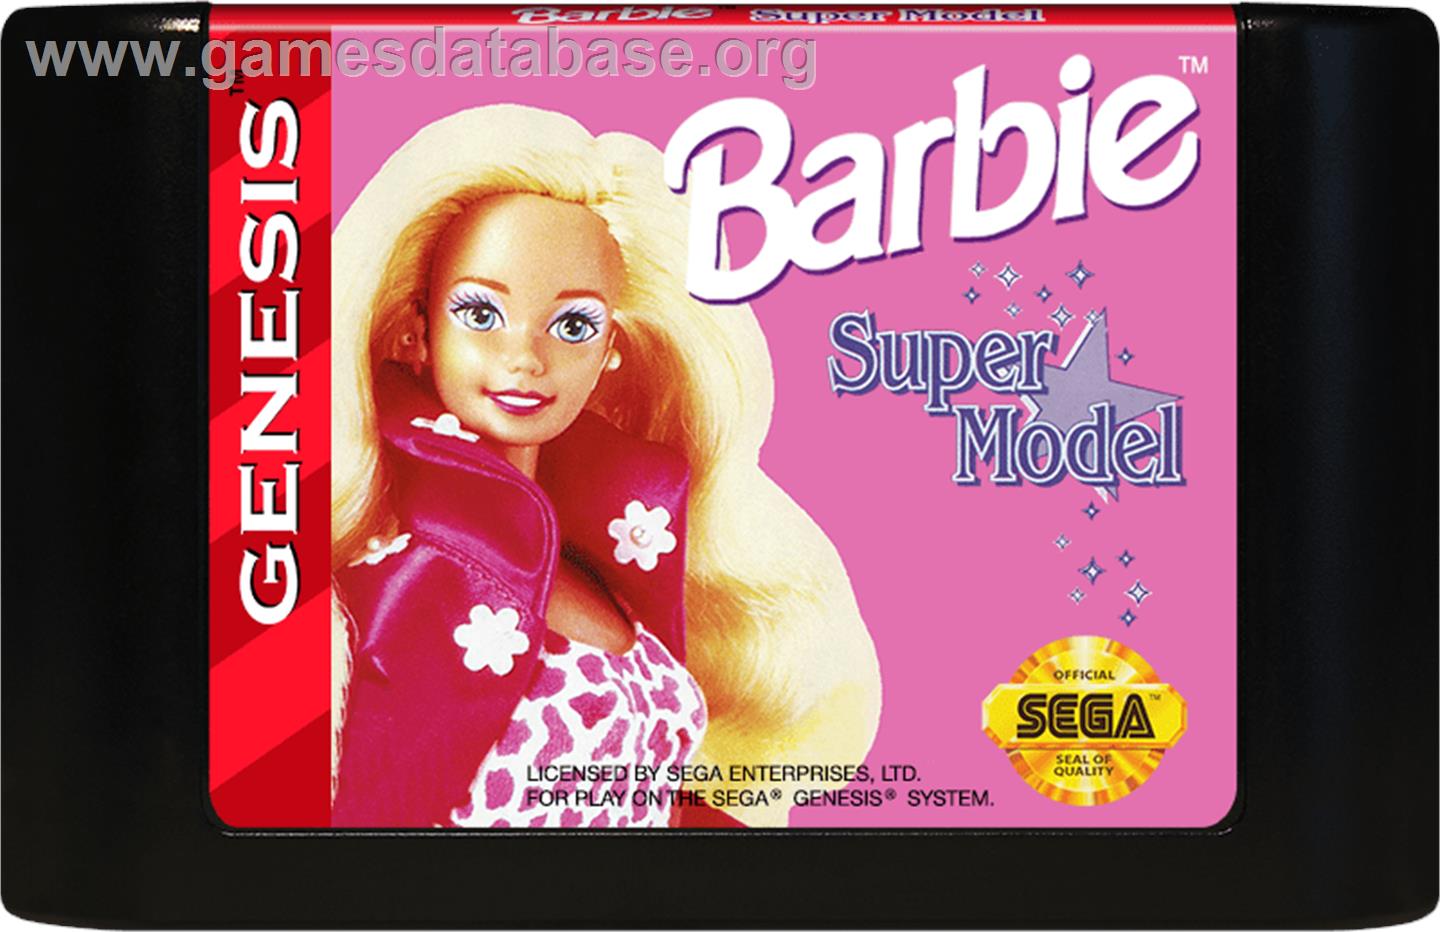 Barbie Super Model - Sega Genesis - Artwork - Cartridge